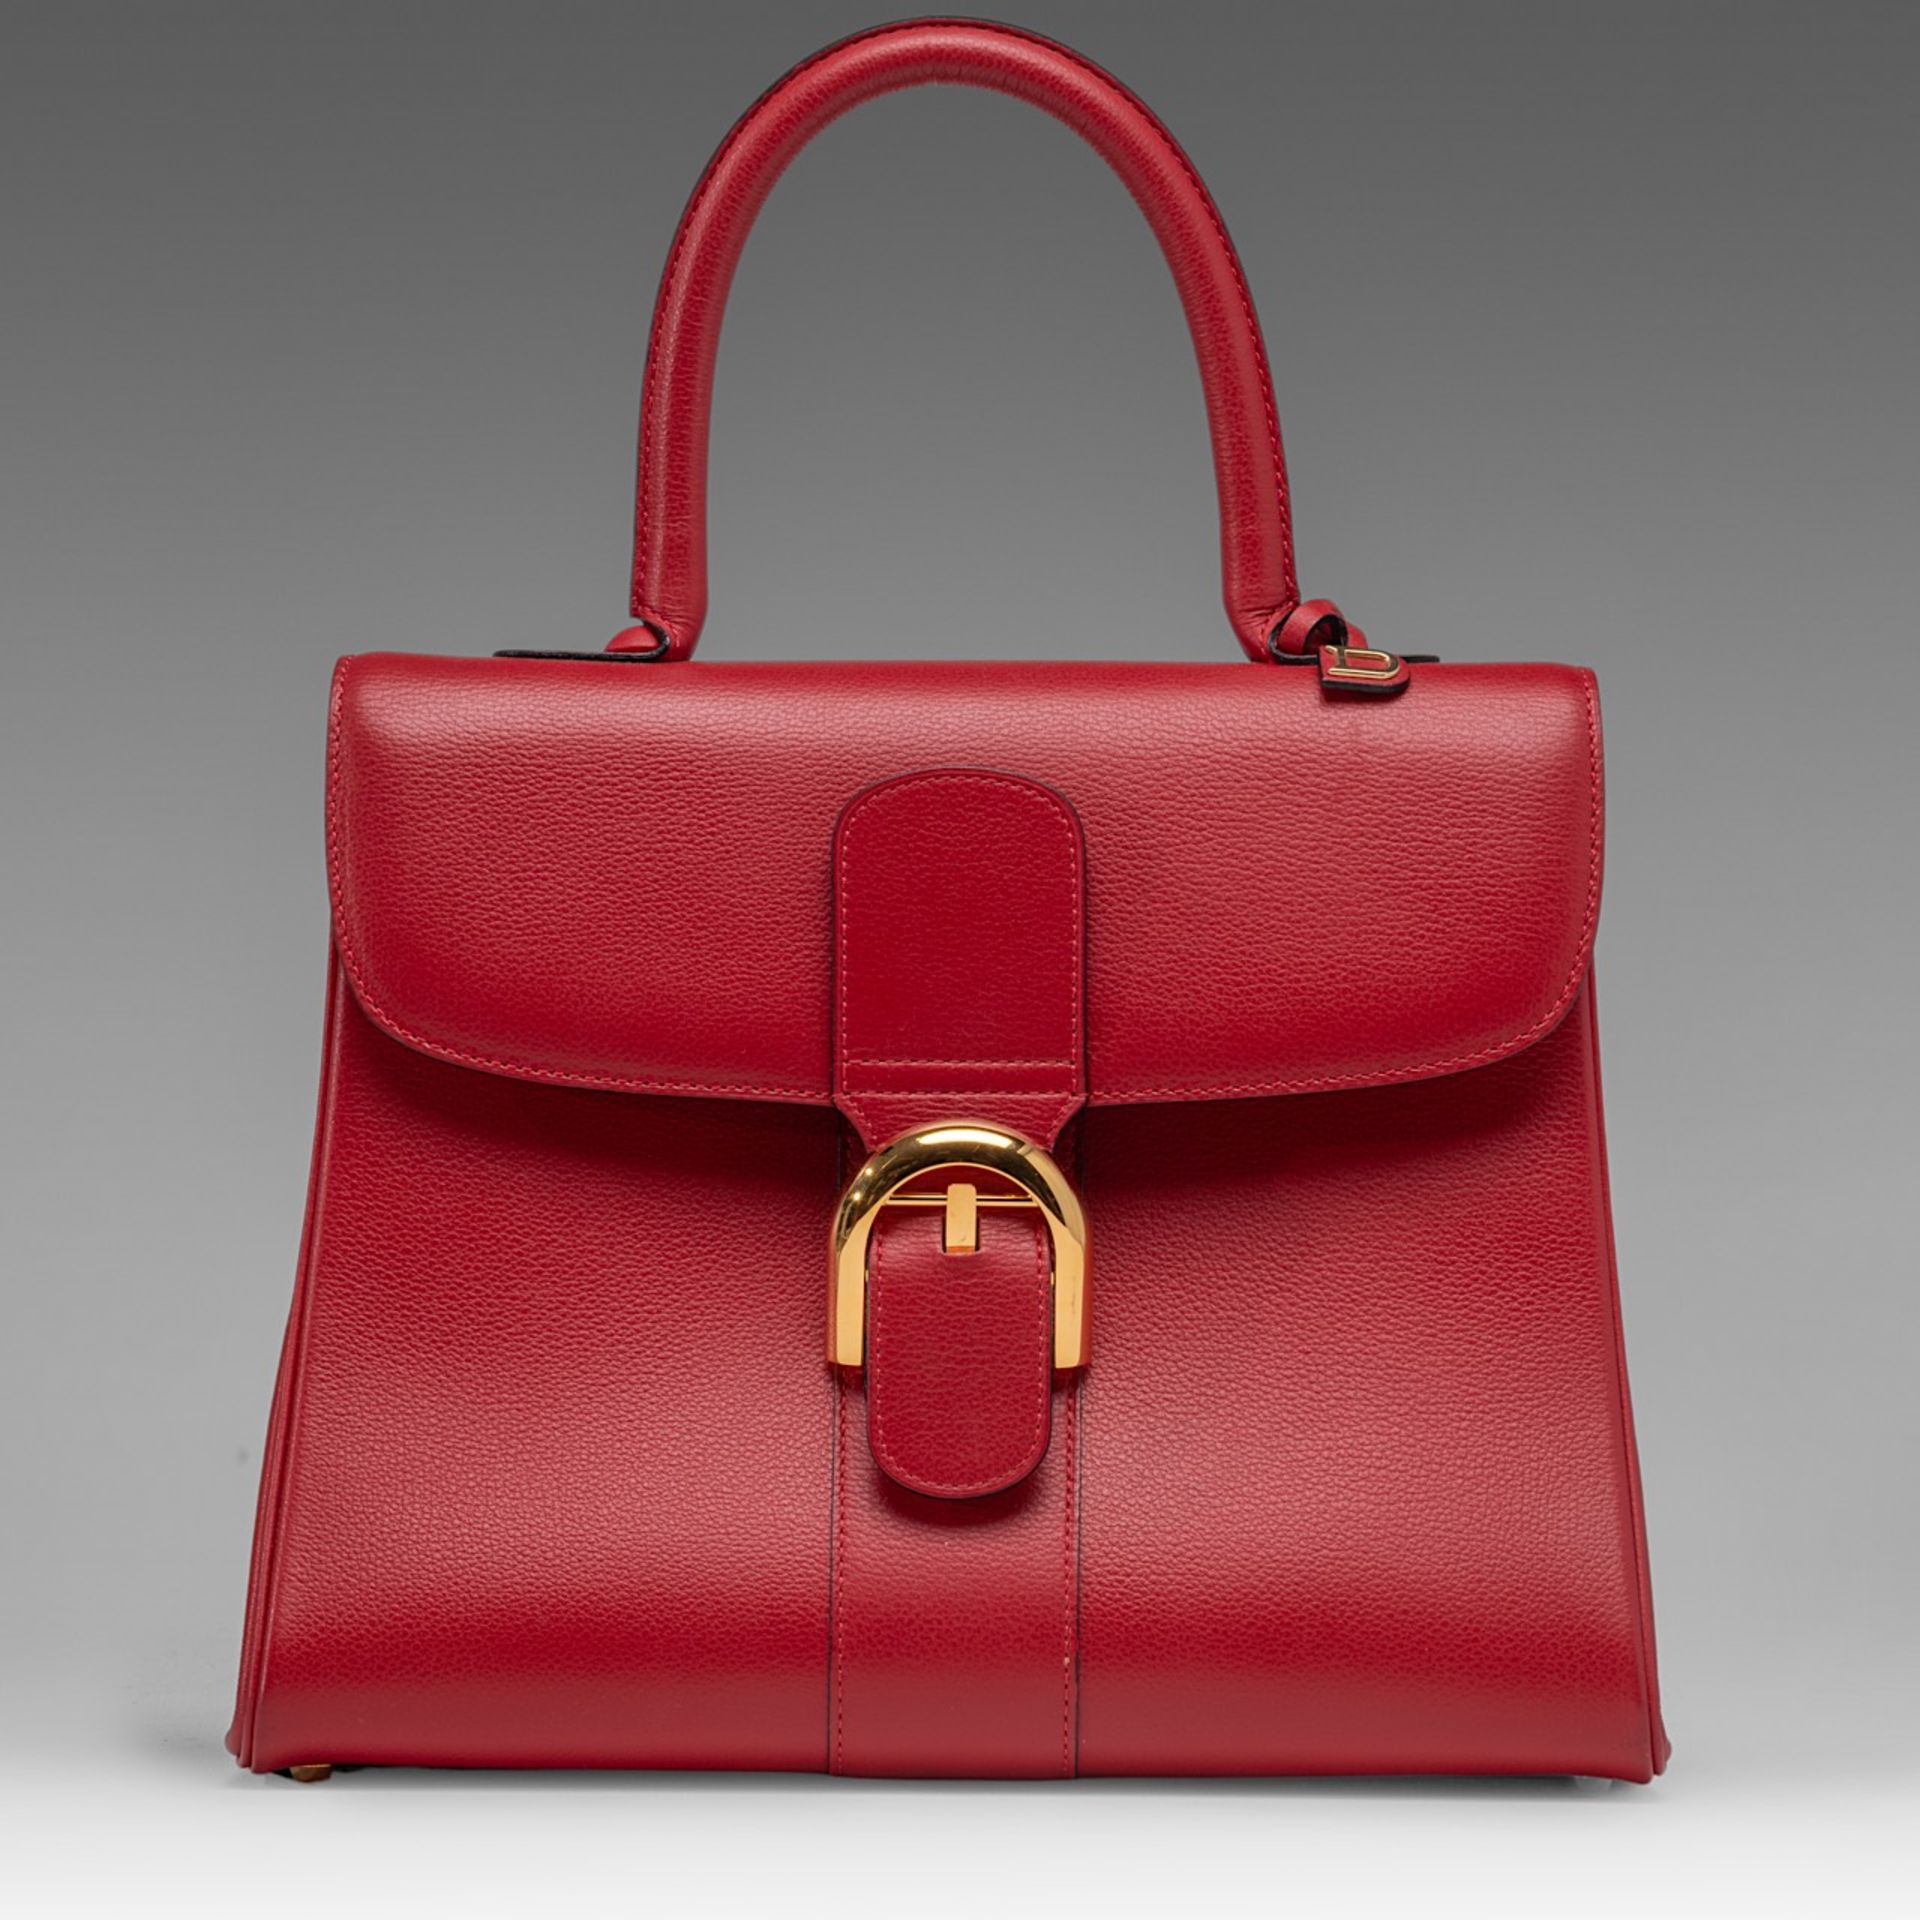 A Delvaux Brillant MM red leather handbag, H 21,5 - W 29 - D 13,5 cm - Bild 2 aus 14